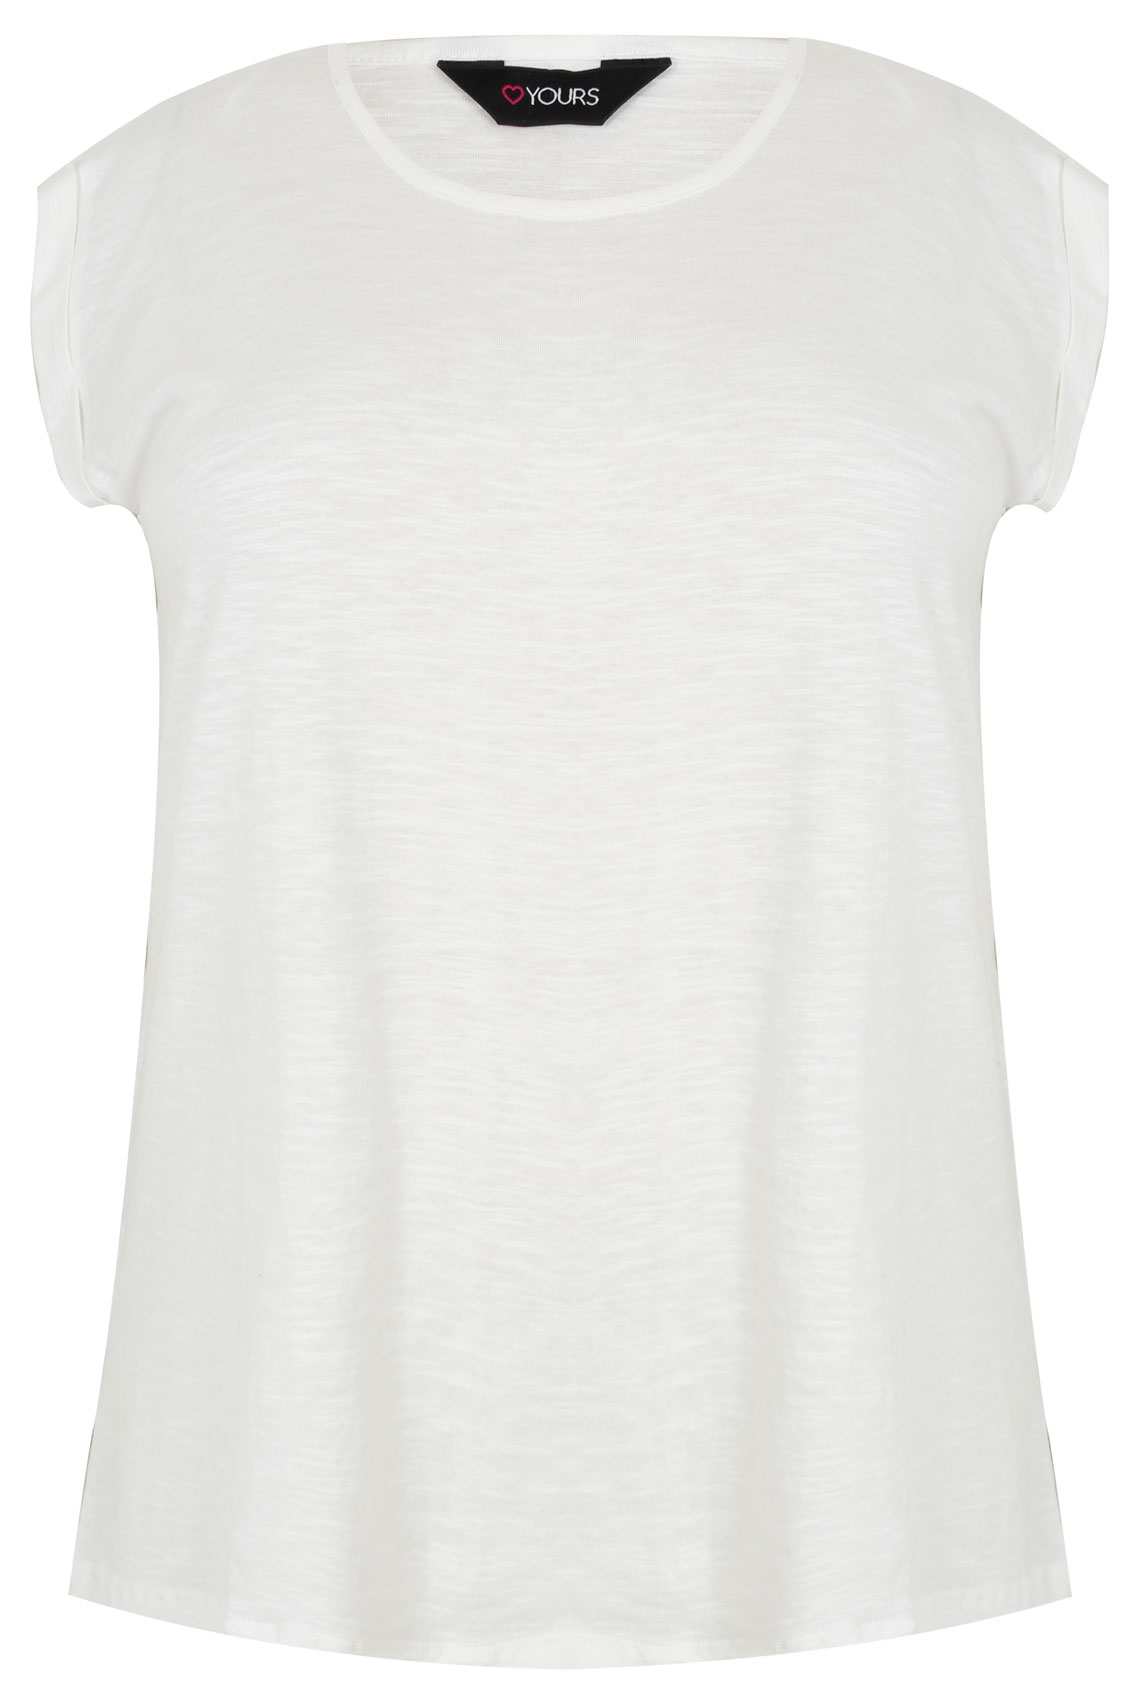 Ivory Basic T-Shirt With Turn-Back Short Sleeves Plus Size 16 to 32